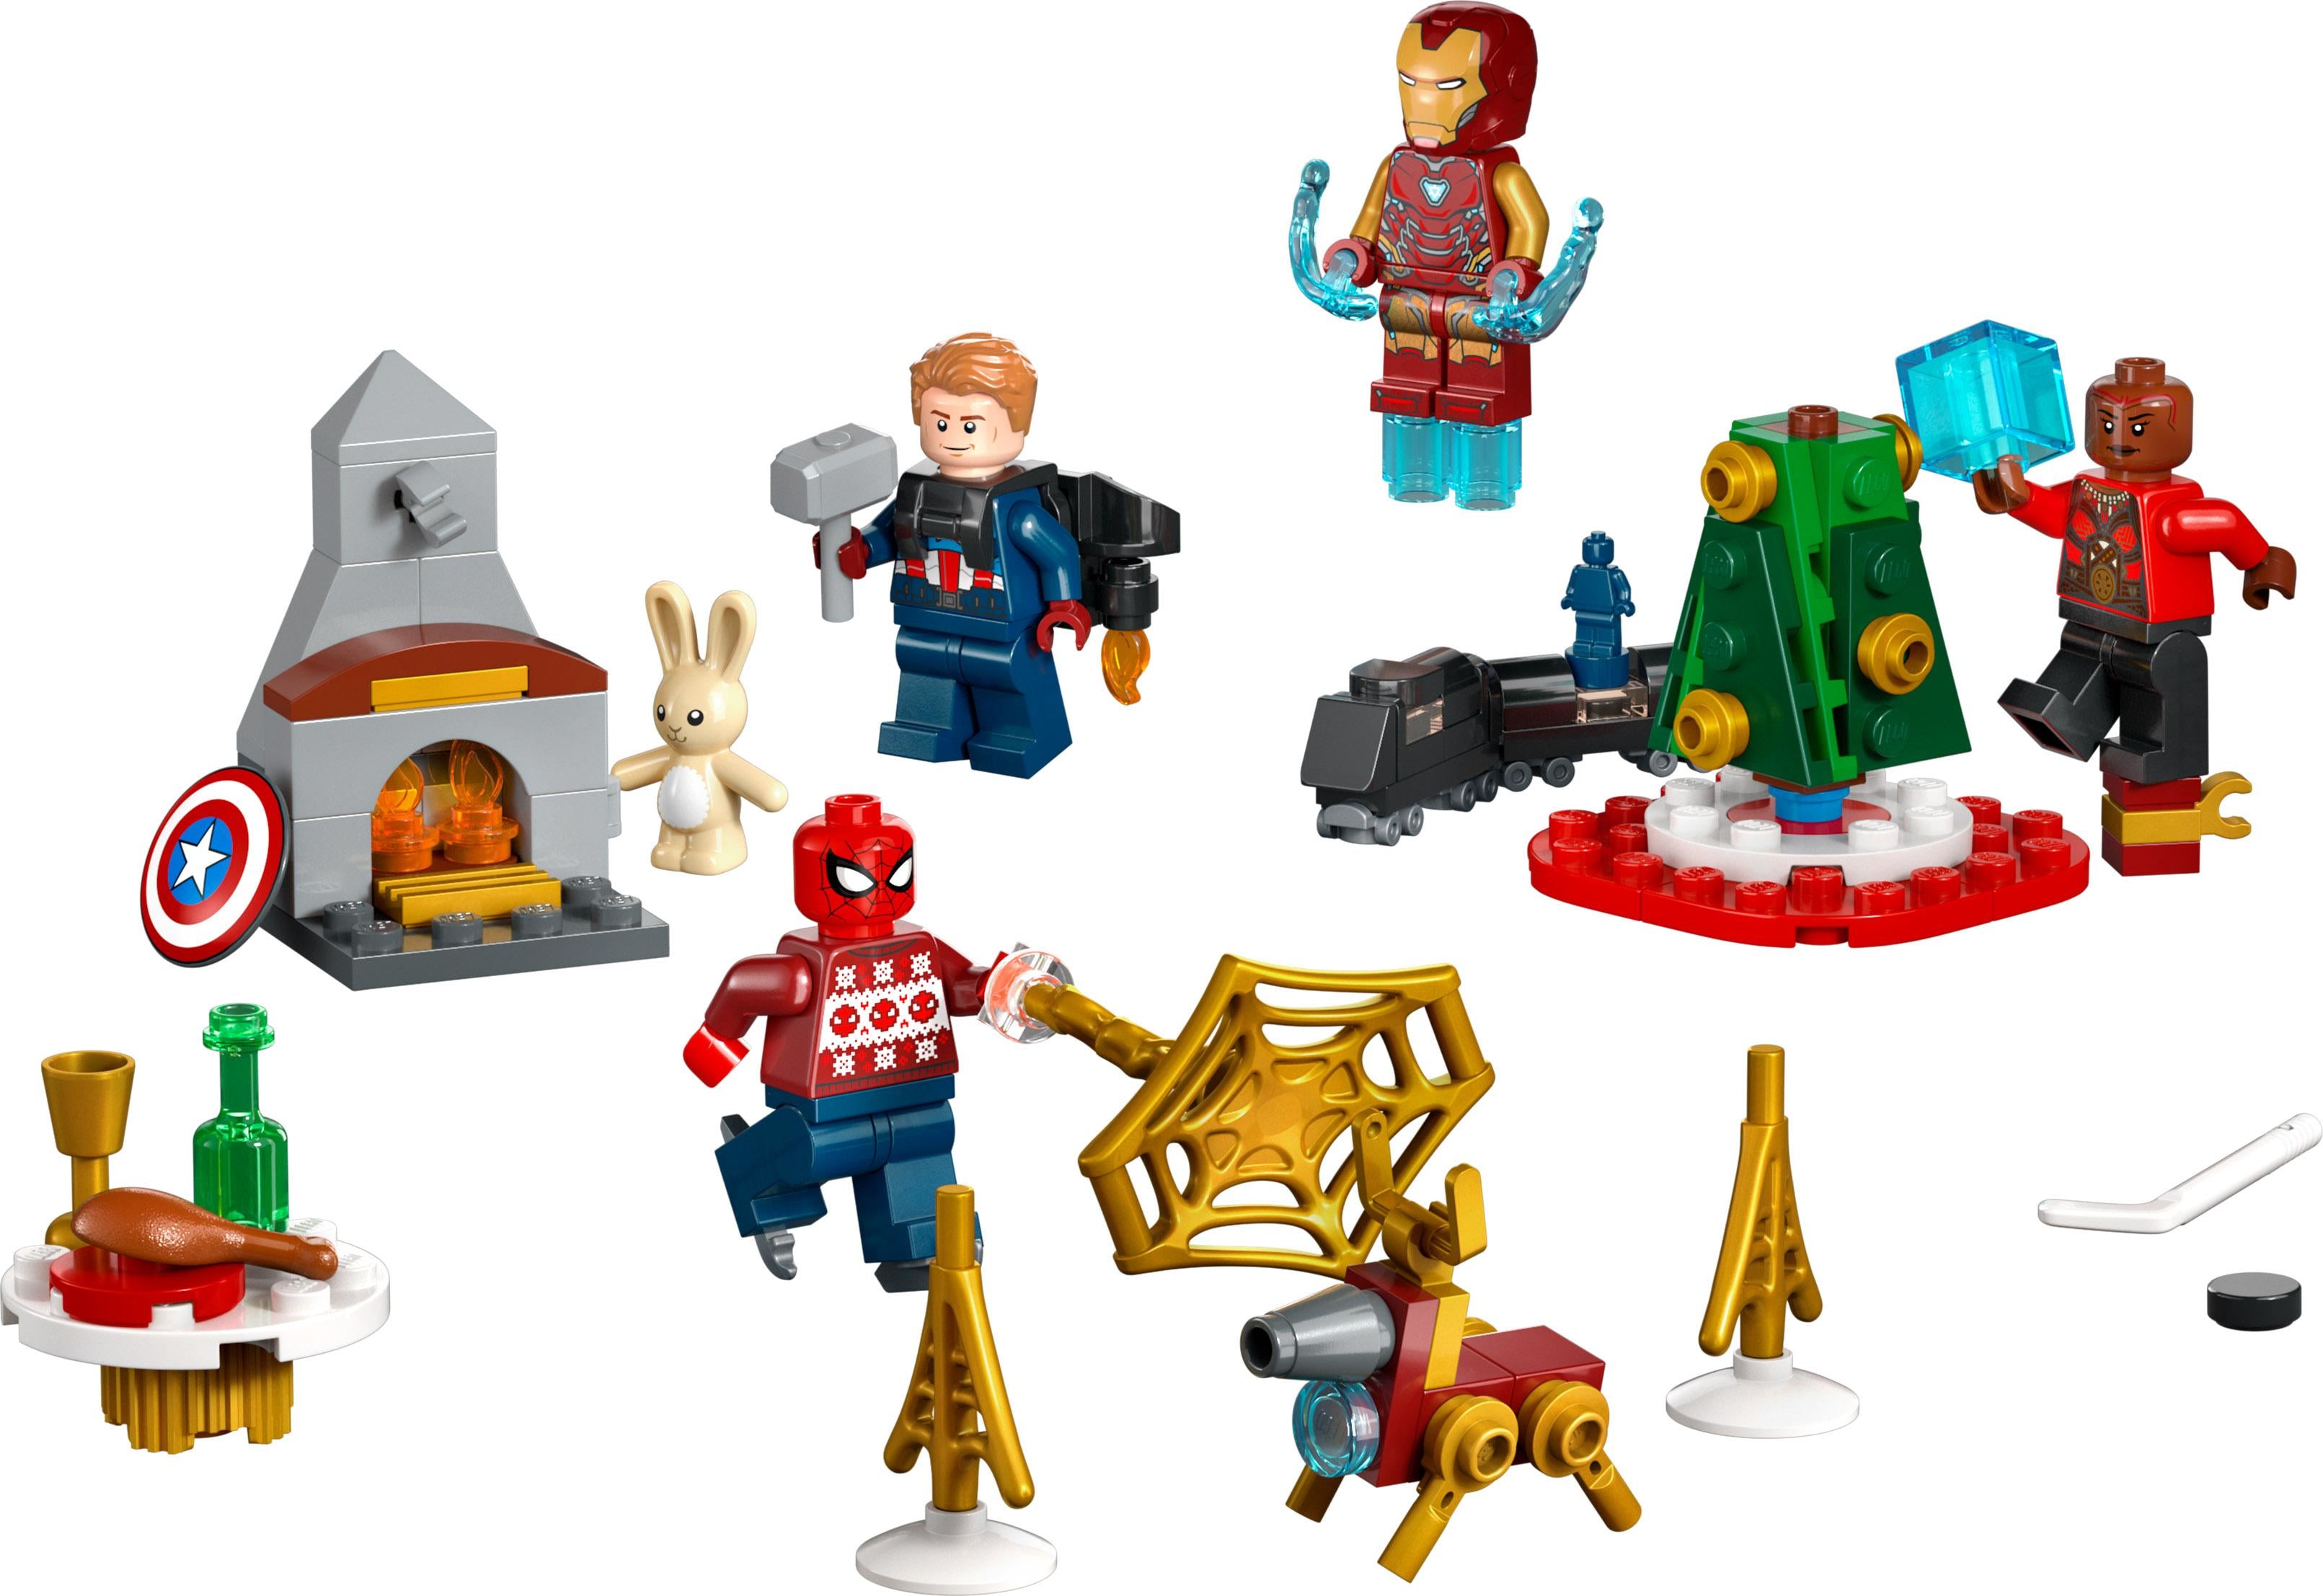 LEGO Marvel - Avengers Julekalender (76267)